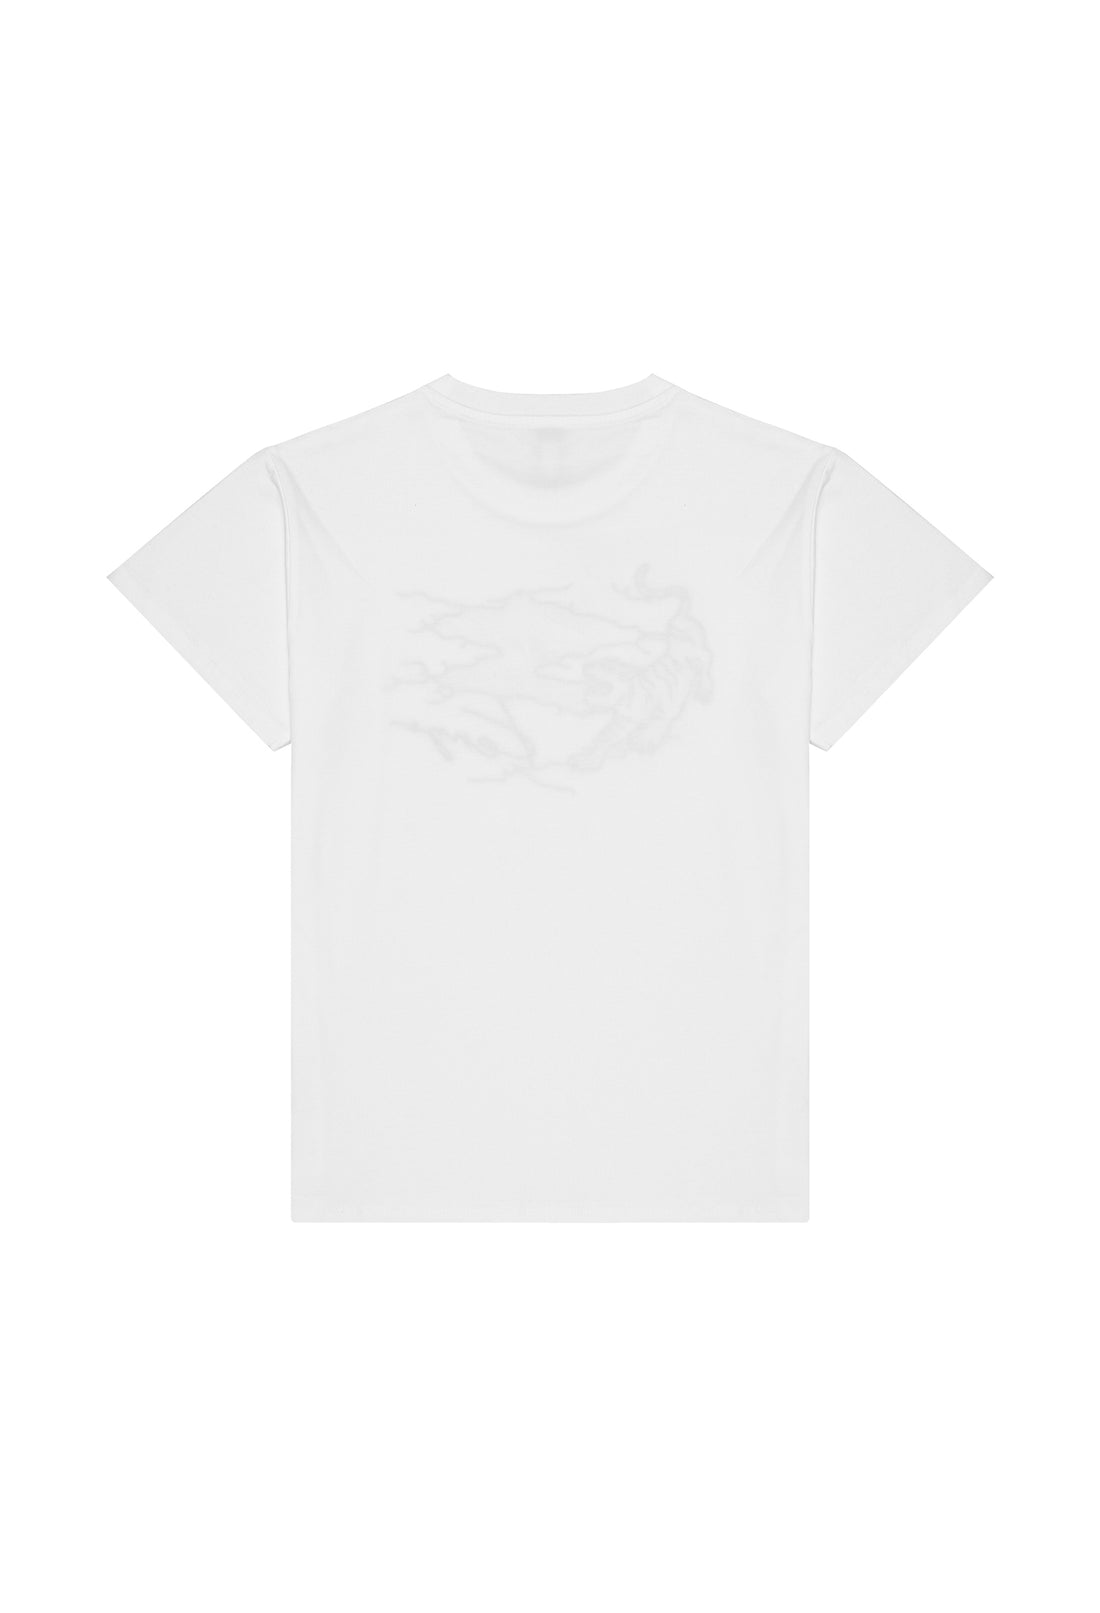 Koszulka biała Kenzo KENZO KIDS 123 K25790 123/91c